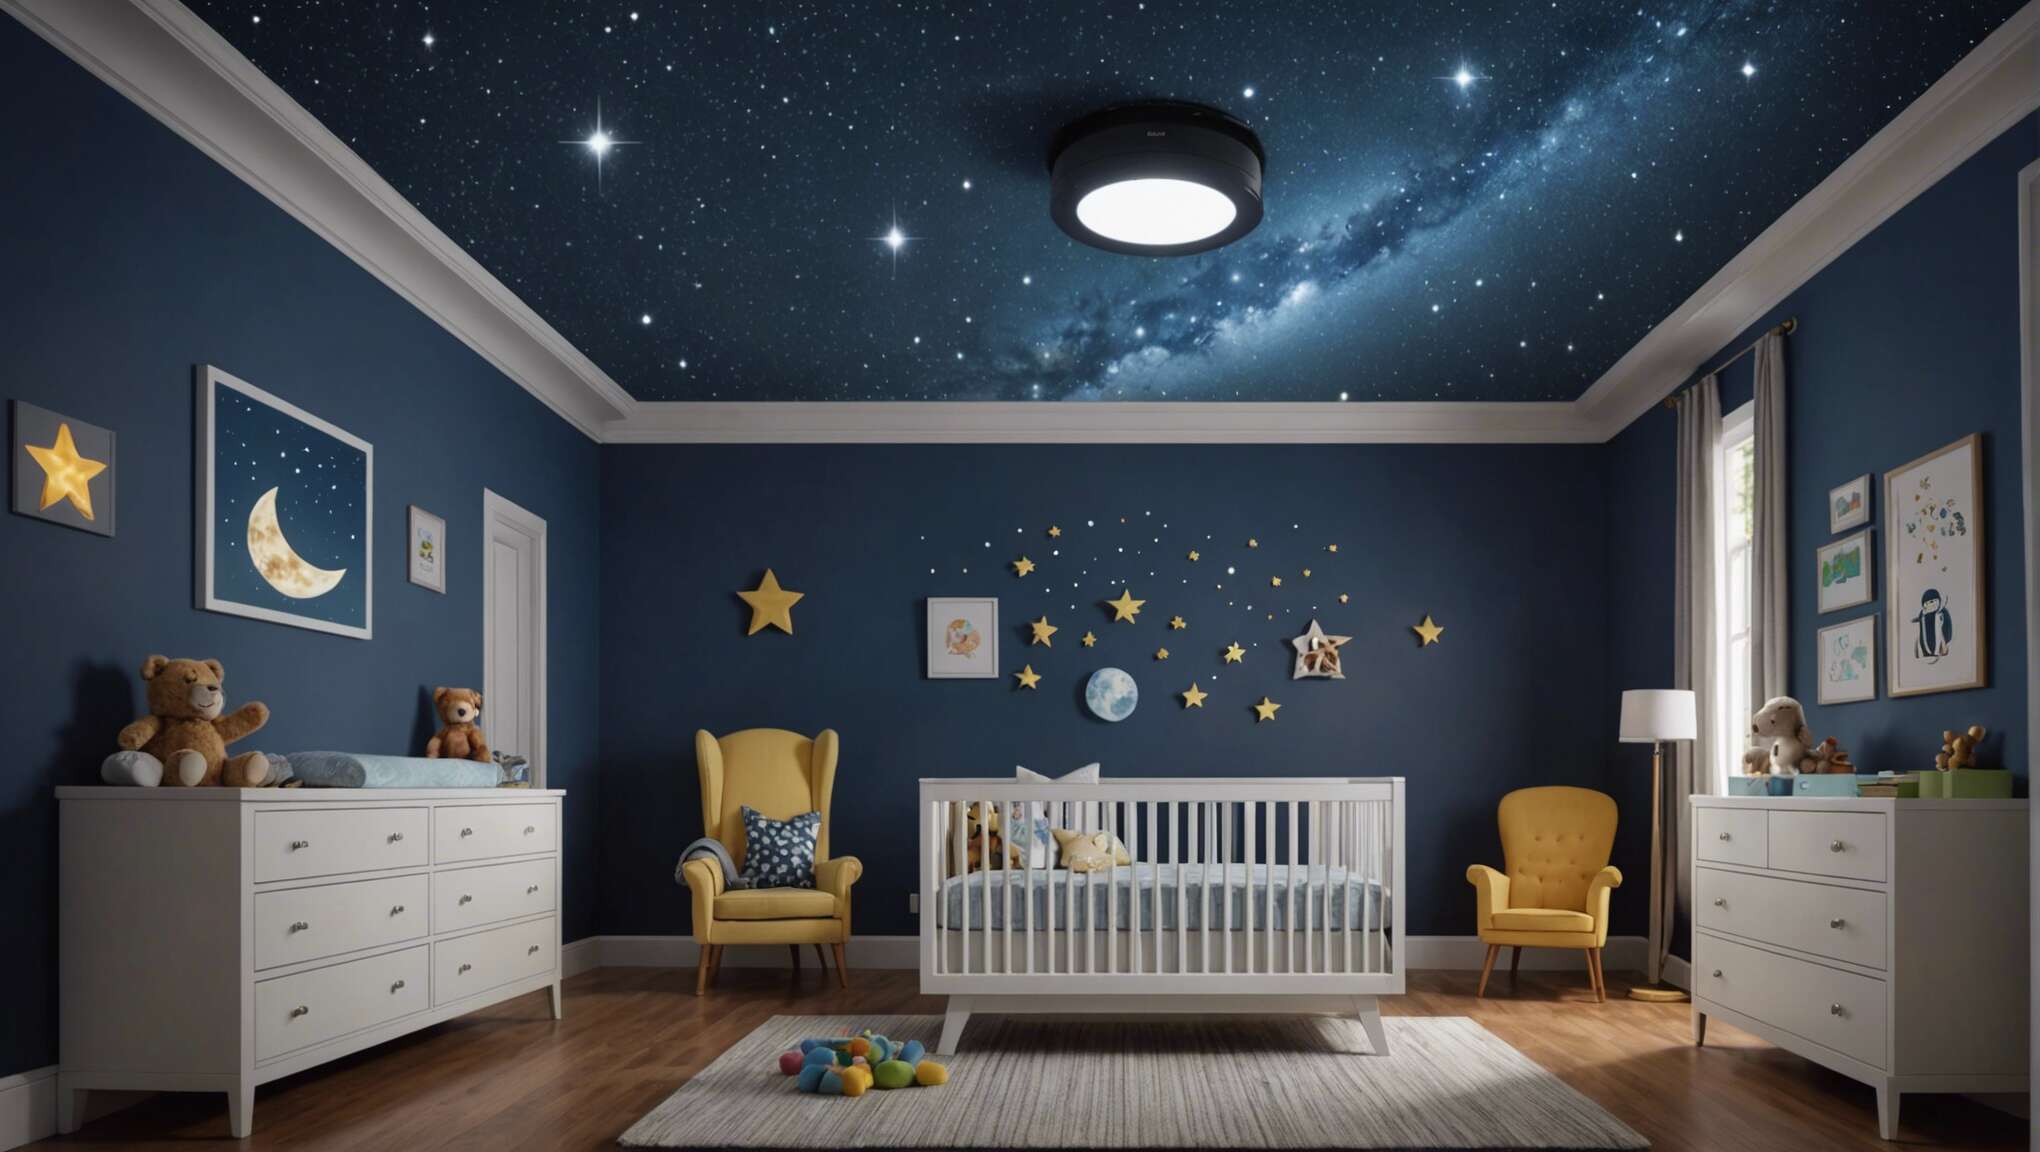 Projecteur de ciel étoilé : un voyage nocturne apaisant pour bébé